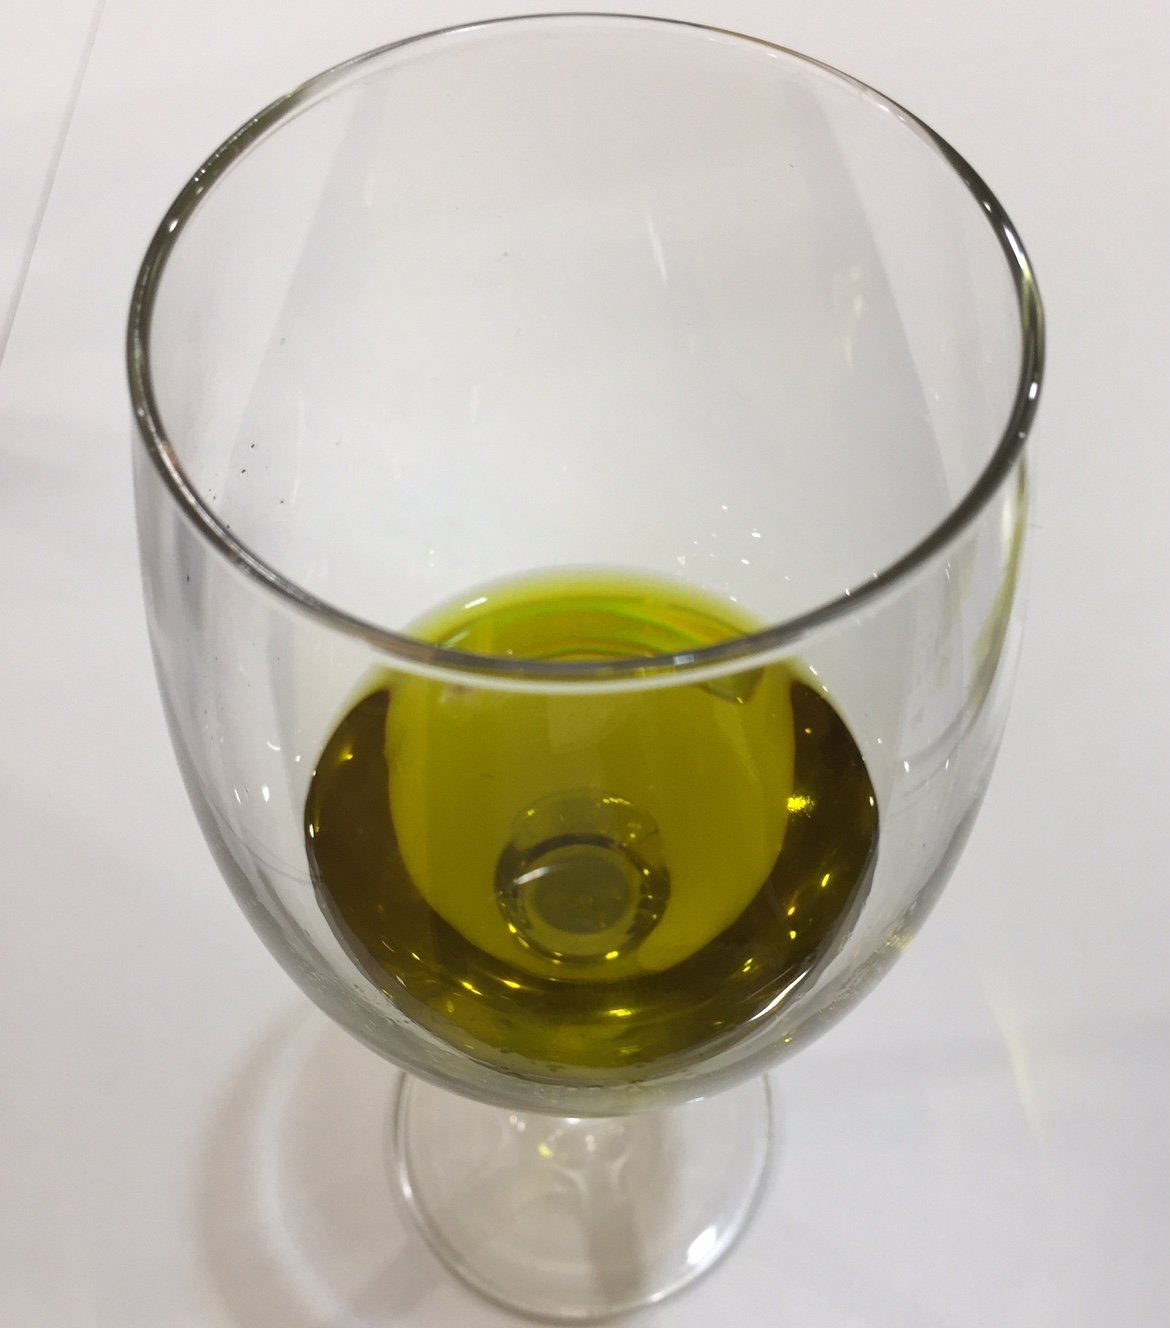 International Symposium on olive oil & health